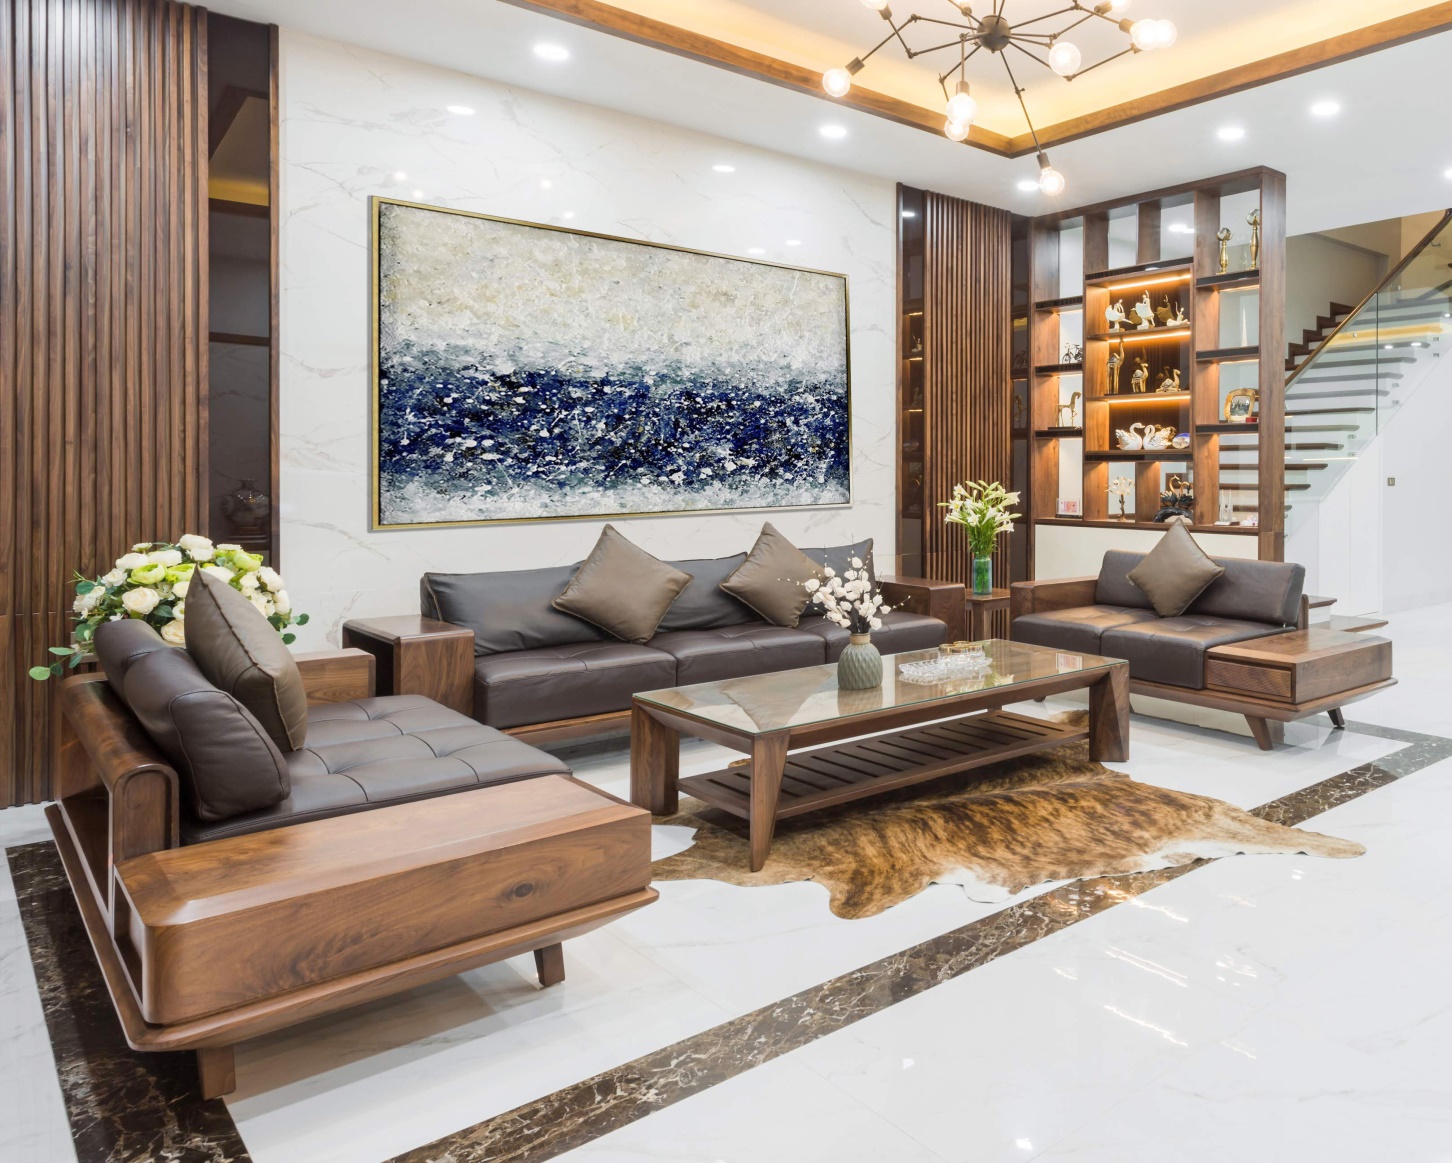 Sofa góc L gỗ sồi Nga BG201 sẽ là lựa chọn hoàn hảo cho không gian phòng khách của bạn. Sản phẩm được sản xuất từ gỗ sồi Nga cao cấp, thiết kế sang trọng, đẳng cấp với đệm mút êm ái, tạo sự thoải mái tuyệt đối cho người sử dụng. Hãy để sản phẩm đem lại sự hài lòng cho không gian phòng khách của bạn.